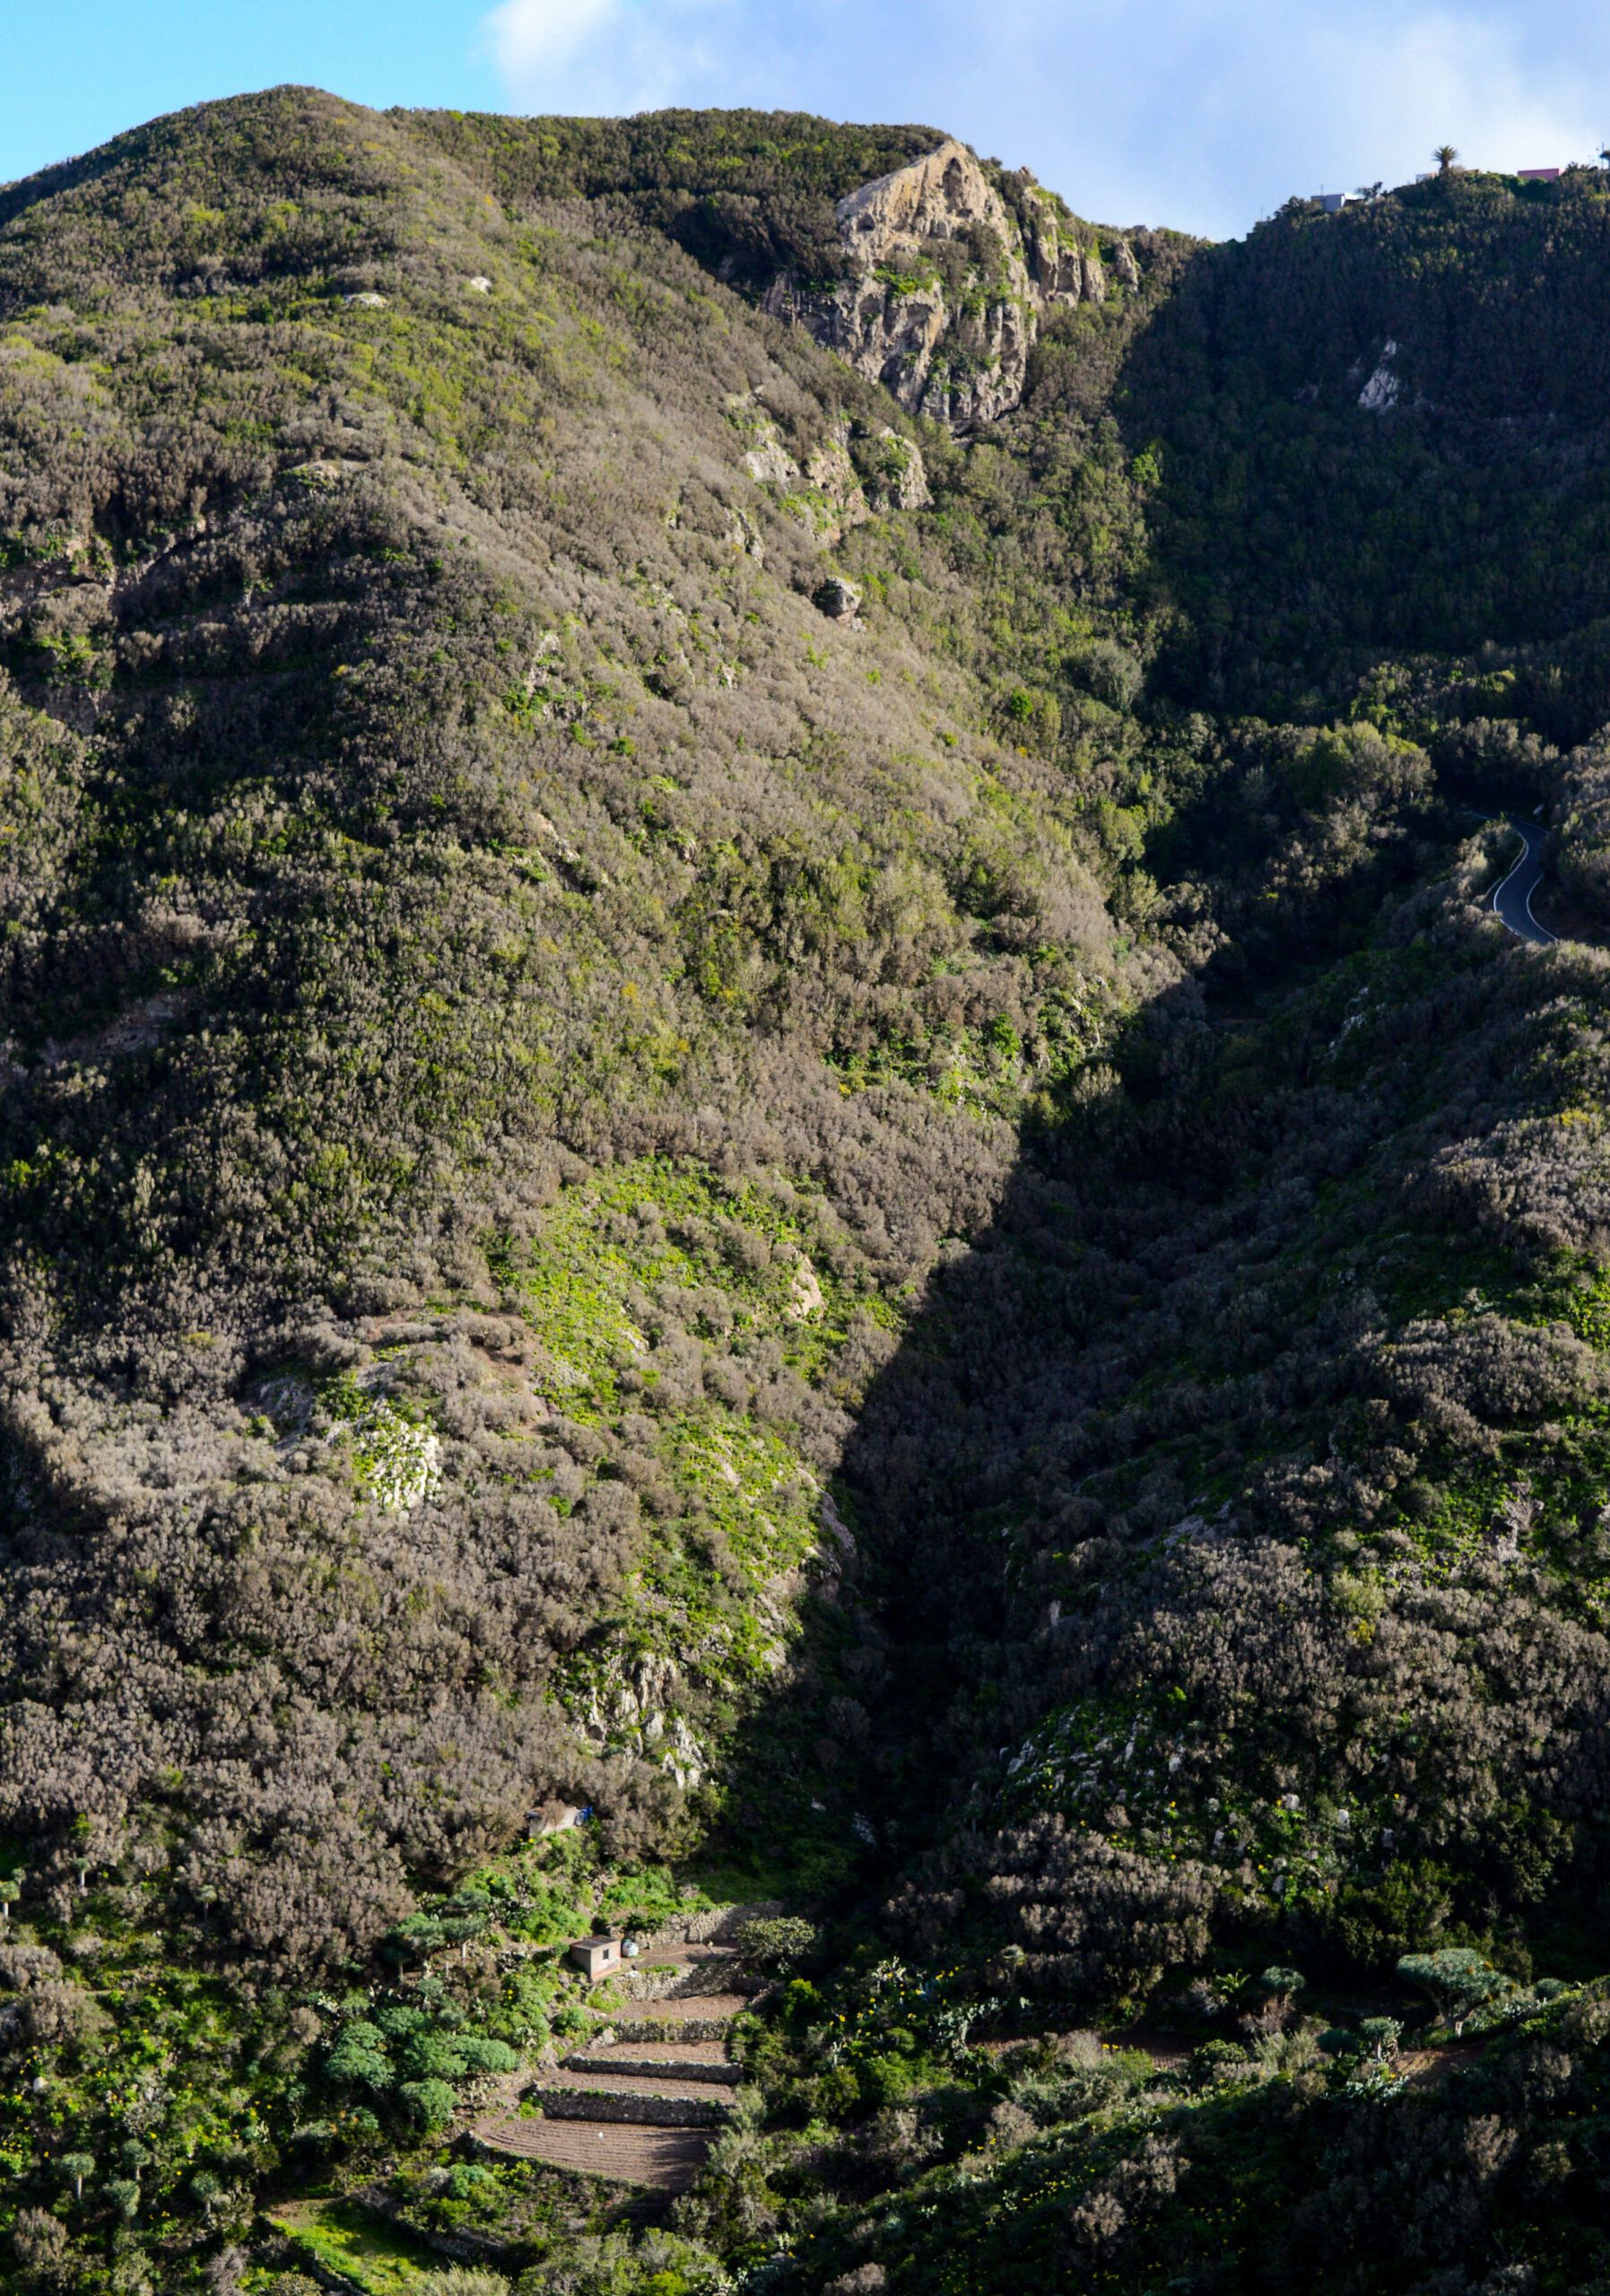 Petites terrasses en bas de la montagne recouverte de végétations